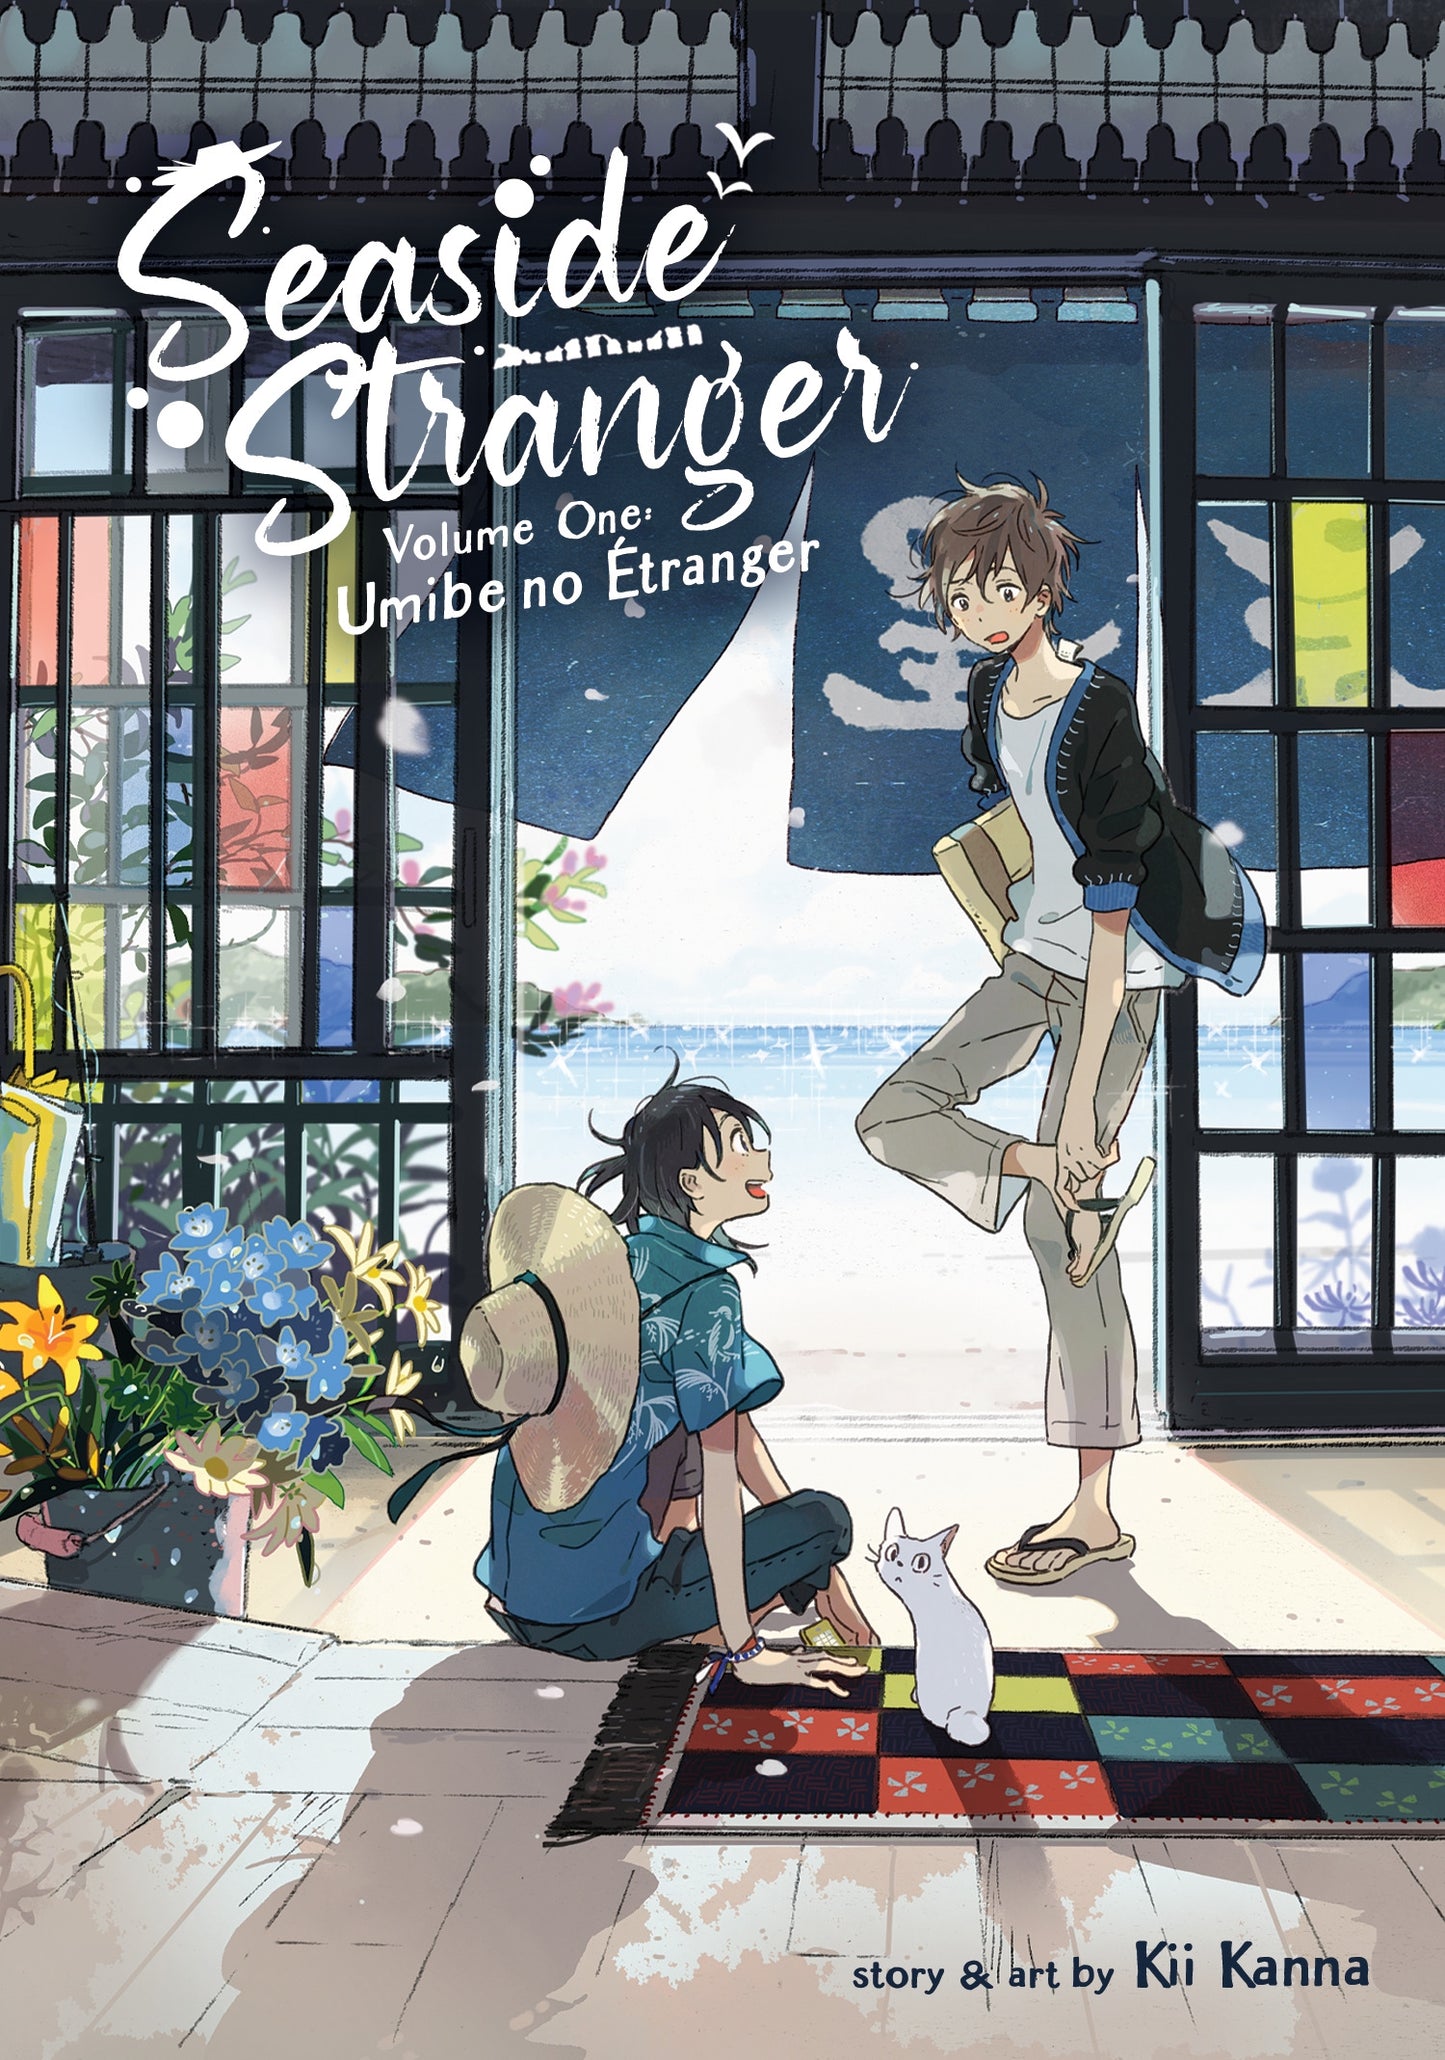 Seaside Stranger Vol. 1 Umibe no Étranger - Manga Warehouse